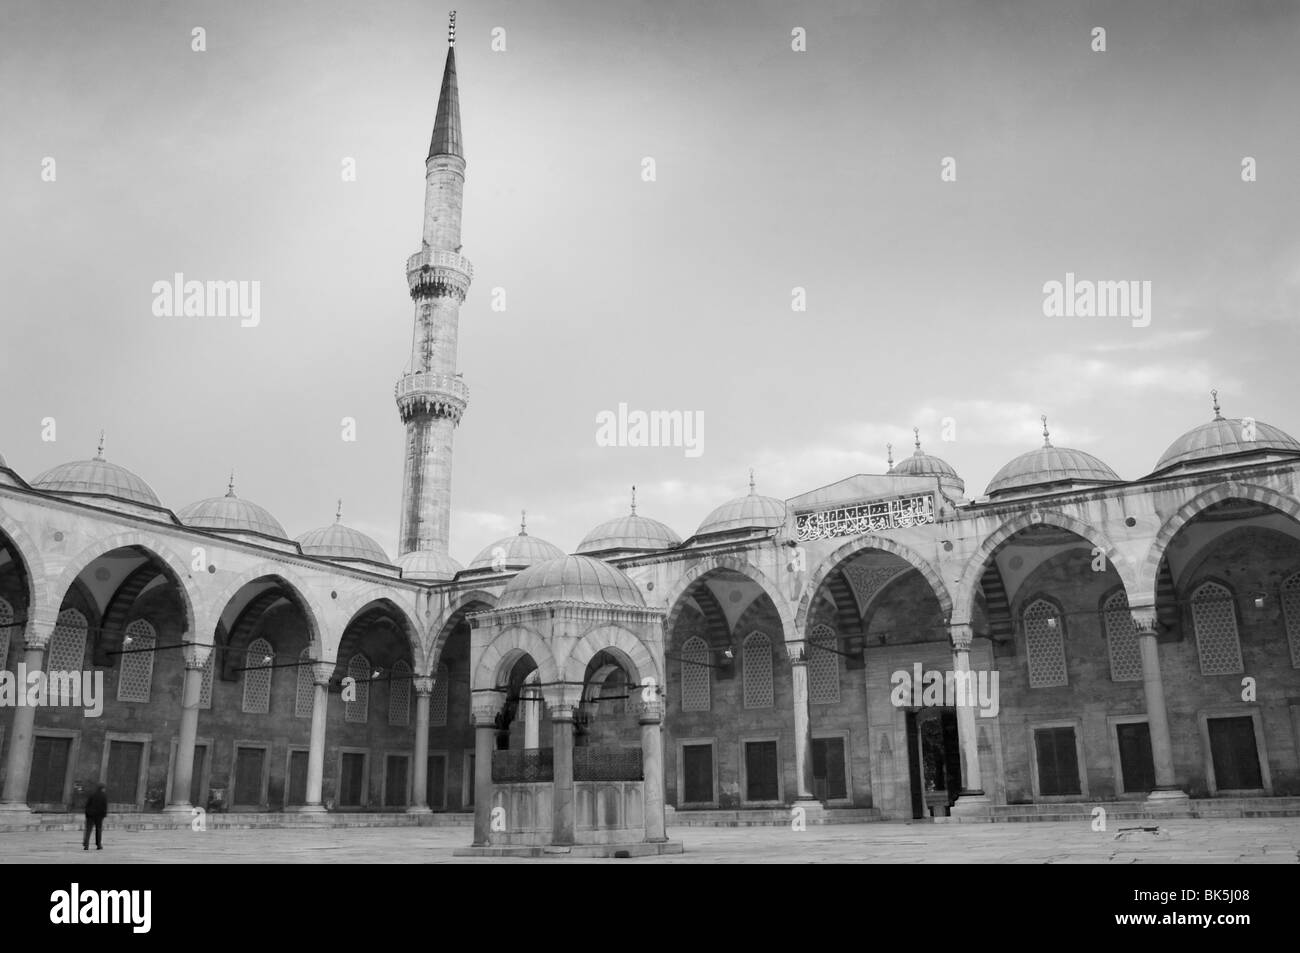 Fontaine d'ablution dans une cour d'une mosquée, la Mosquée Bleue, Istanbul, Turquie Banque D'Images